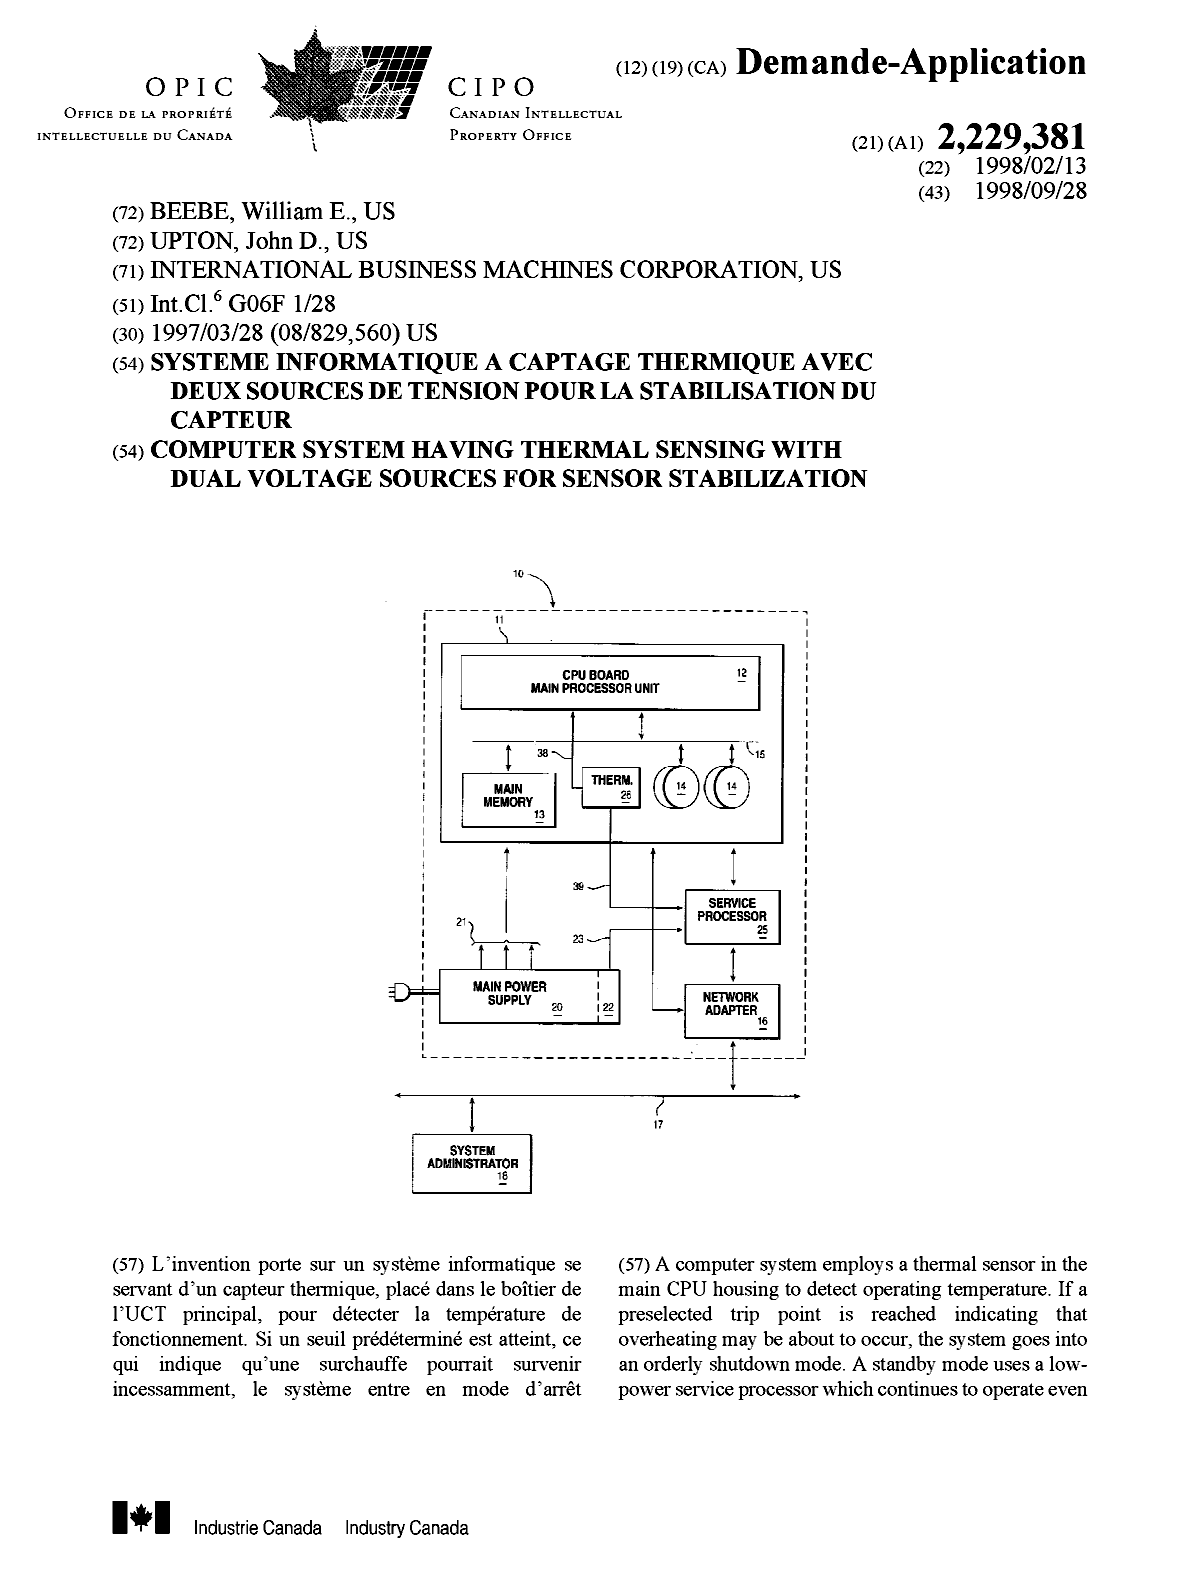 Document de brevet canadien 2229381. Page couverture 19981005. Image 1 de 2